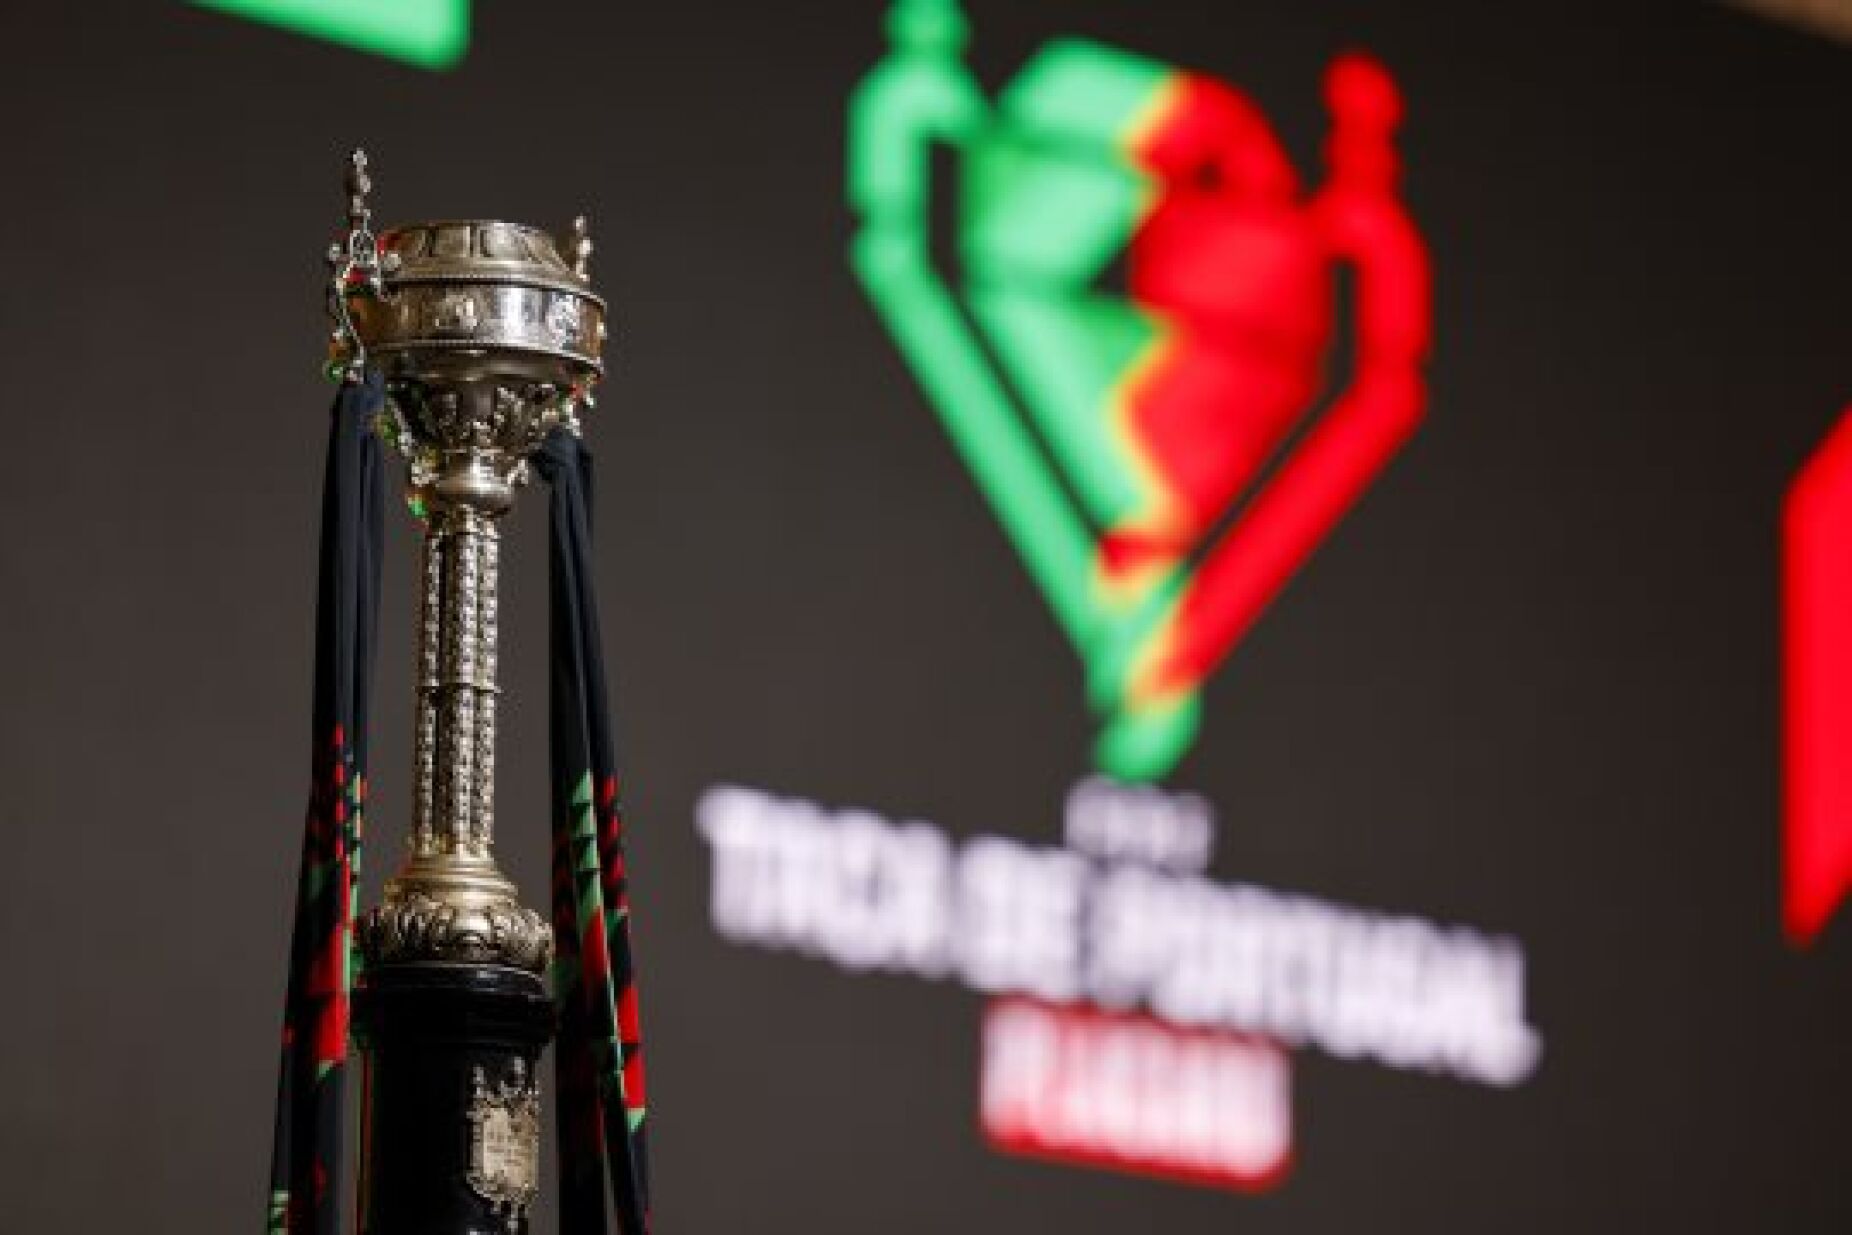 Re)veja a Final da Taça do Algarve esta quarta-feira no Canal 11